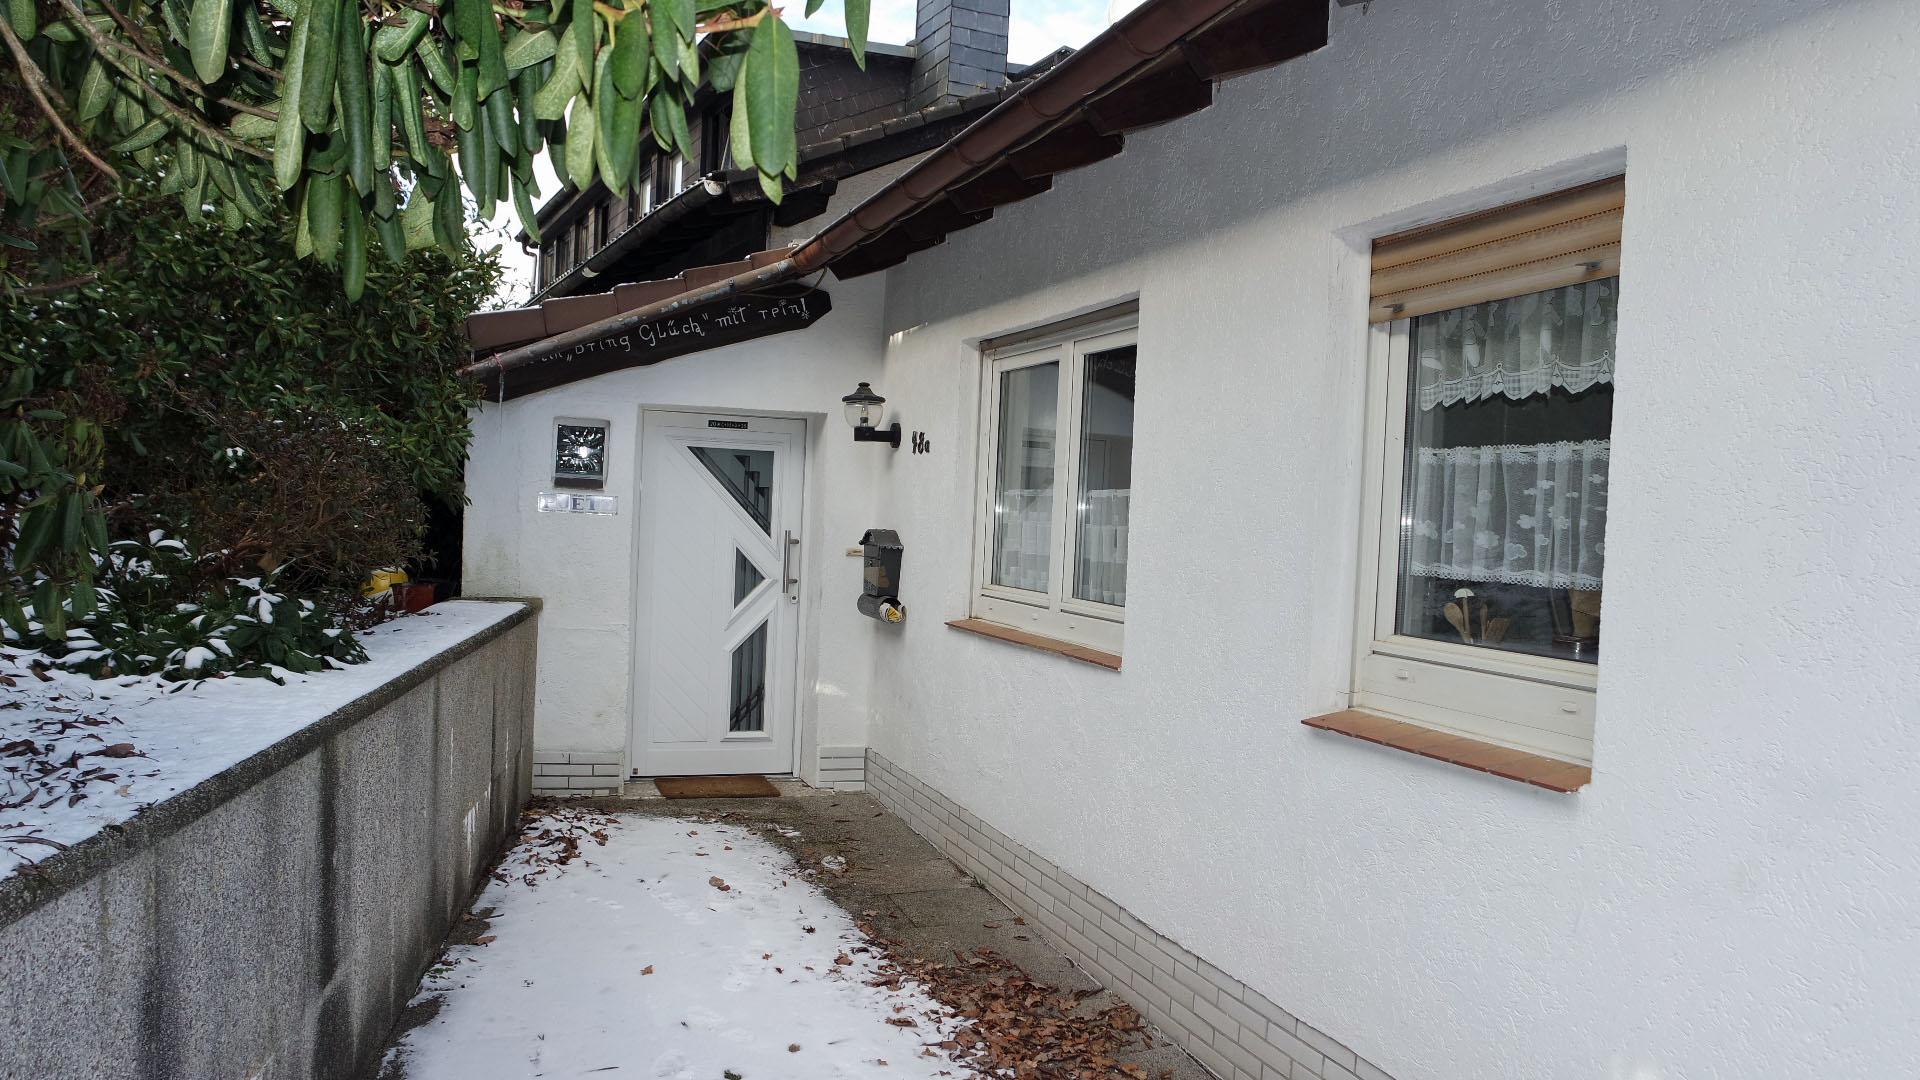 Morsbach: Kleines, preiswertes Wohnhaus mit herrlichem Blick, Dach, Haustür und Fenster 1998 erneuert